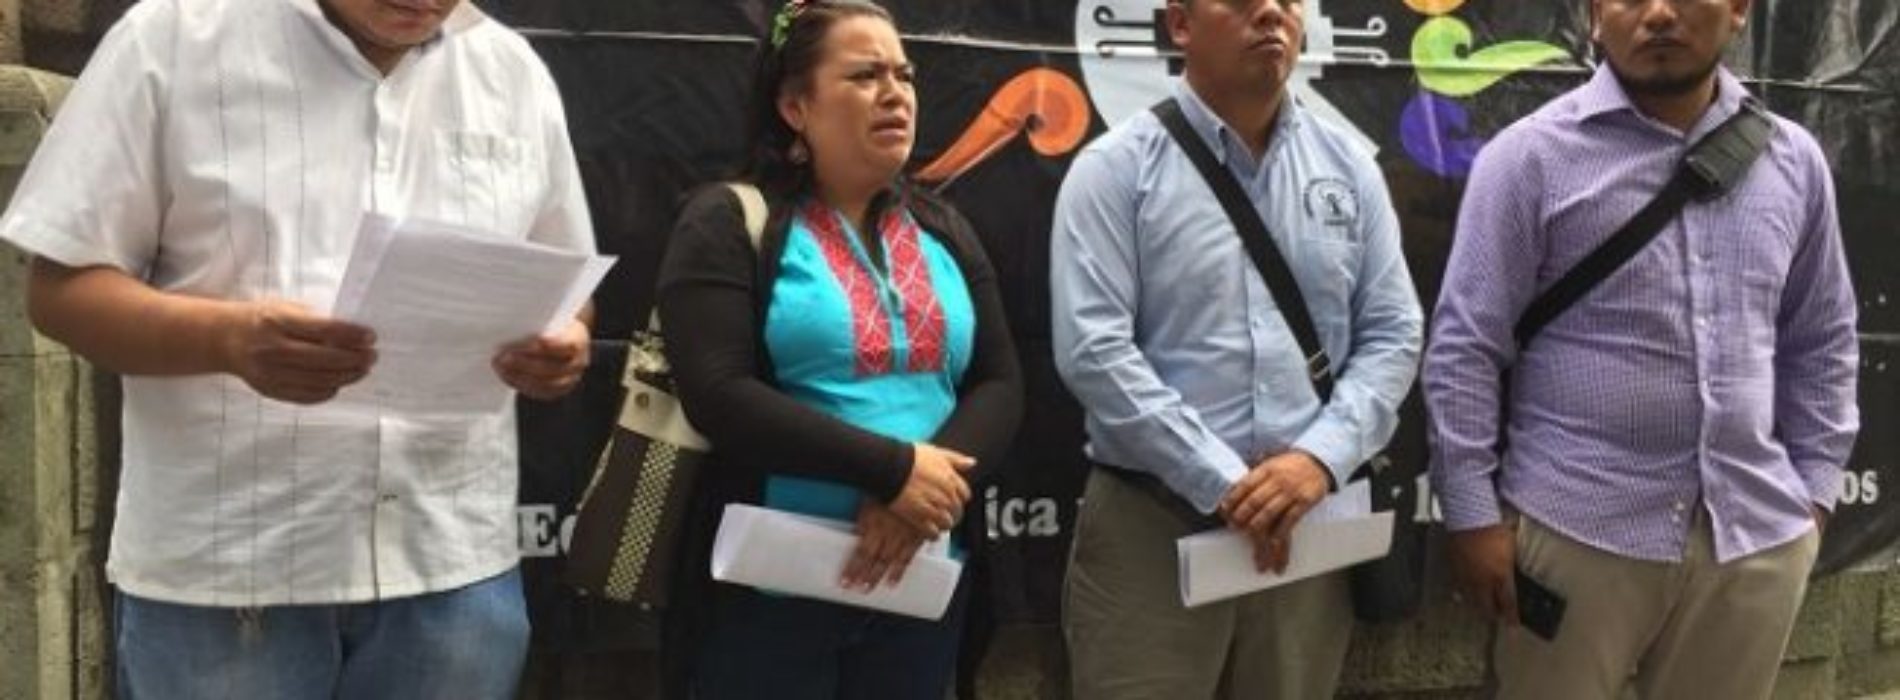 Antorchistas son denunciados por atropellos en El Ojite
Cuauhtémoc